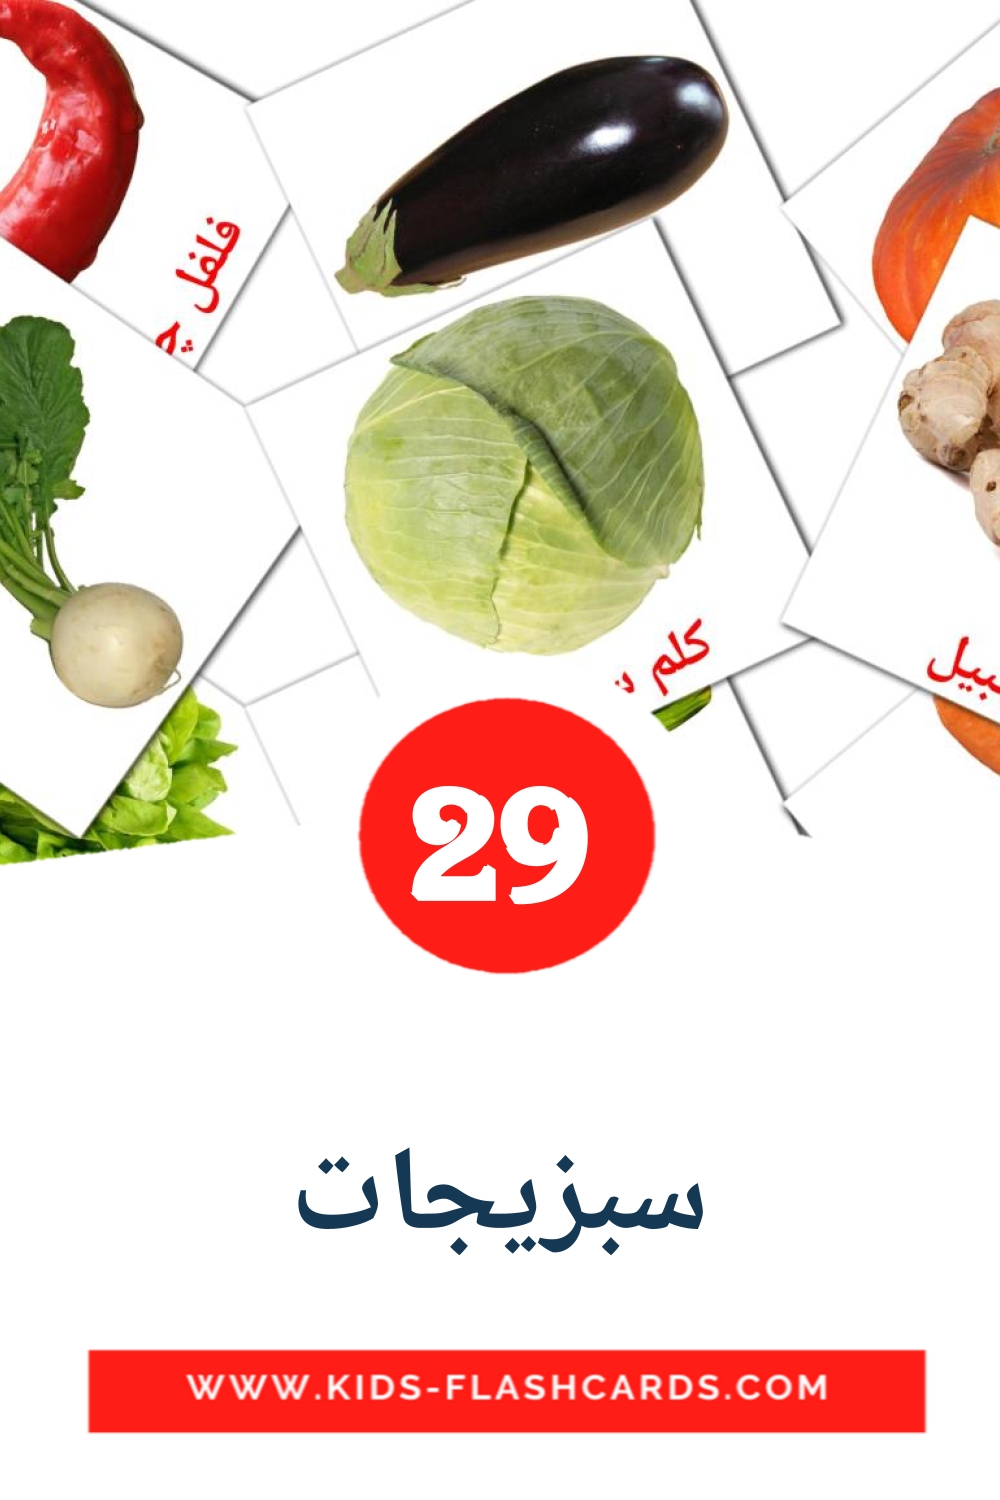 29 Cartões com Imagens de سبزیجات para Jardim de Infância em persa